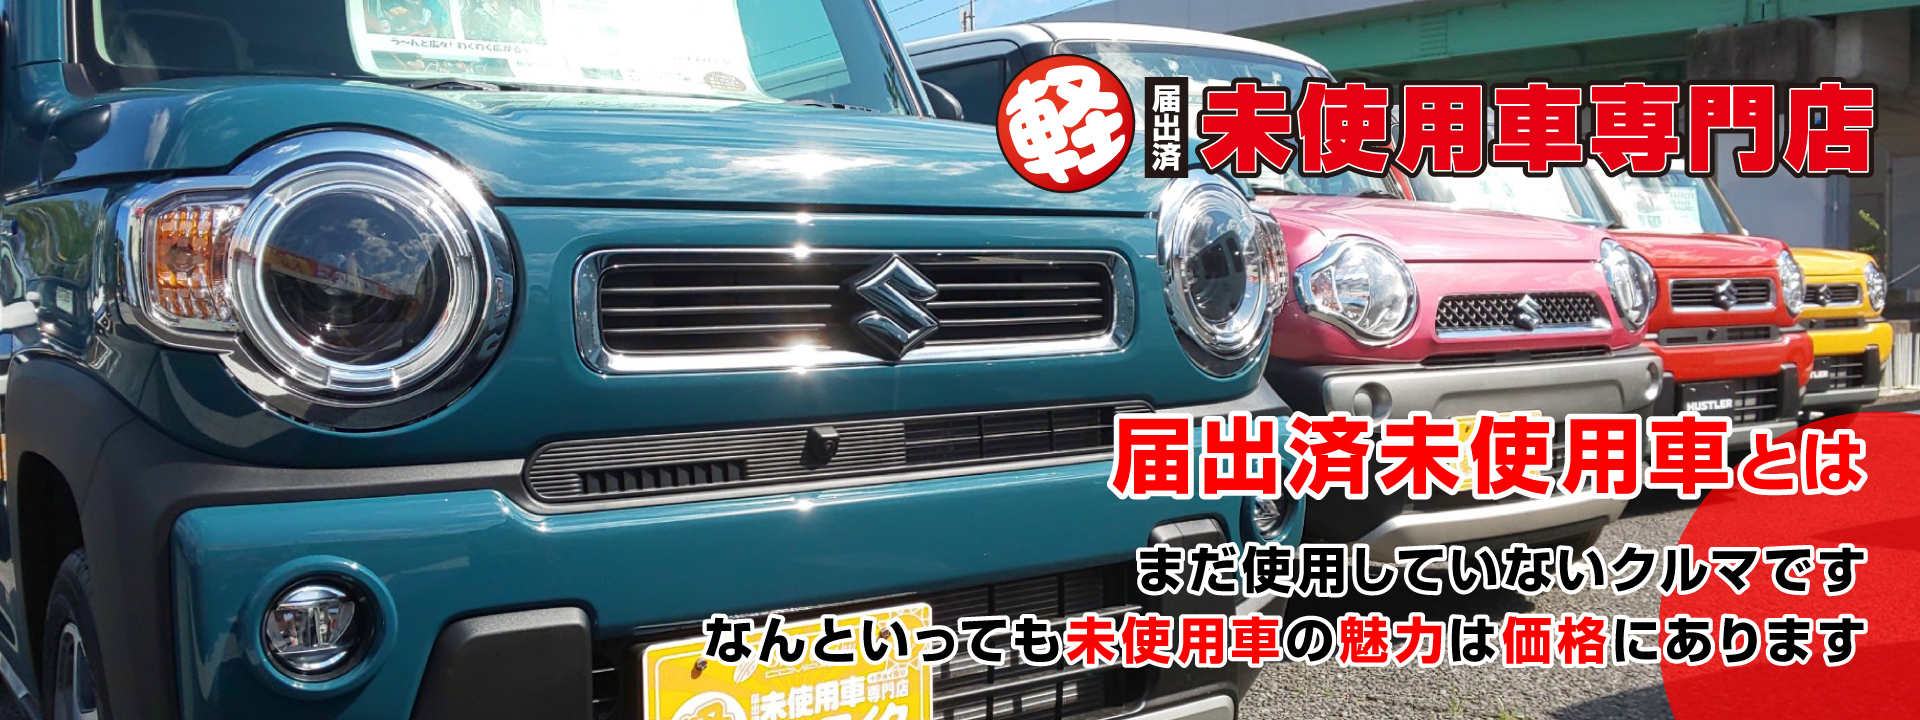 千葉 茂原で新車 中古車 登録済未使用軽自動車 プリウスの販売 車検ならサンアイク